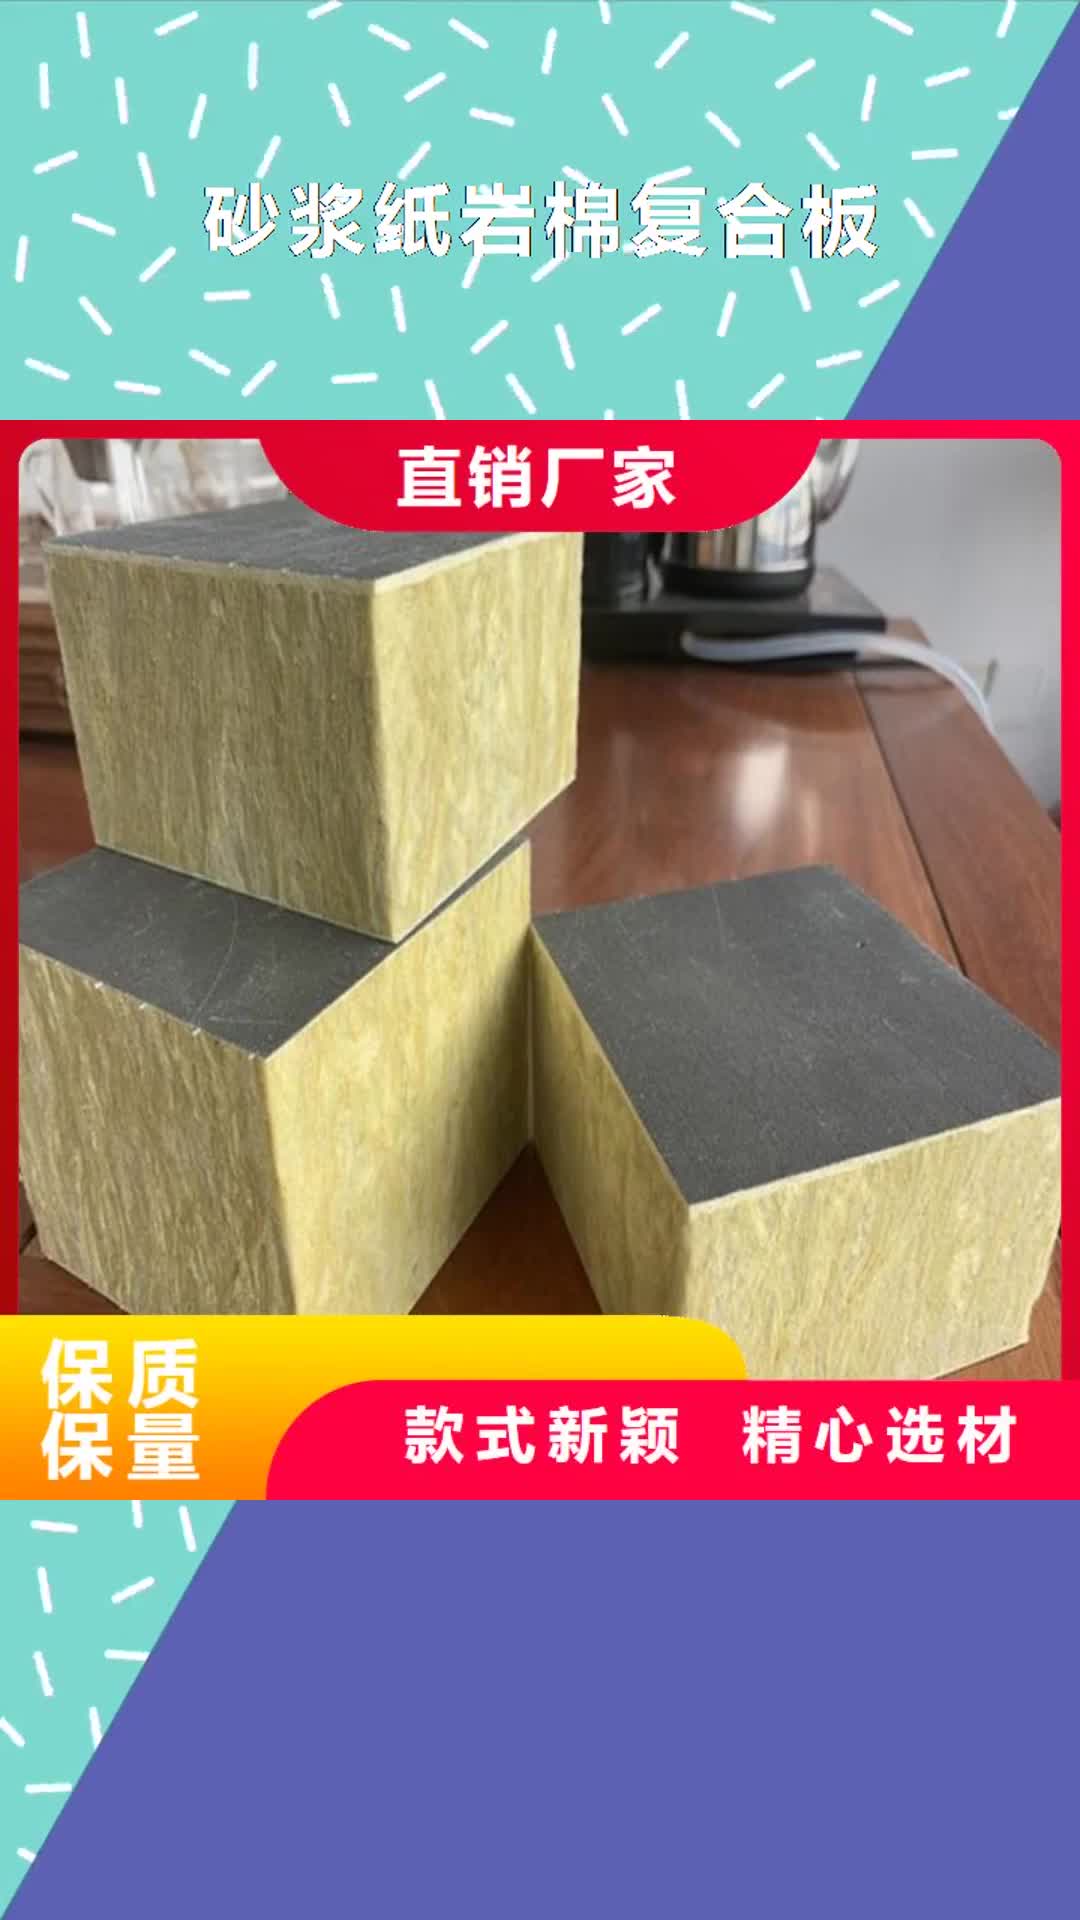 青海 砂浆纸岩棉复合板,【硅酸盐保温板】自产自销